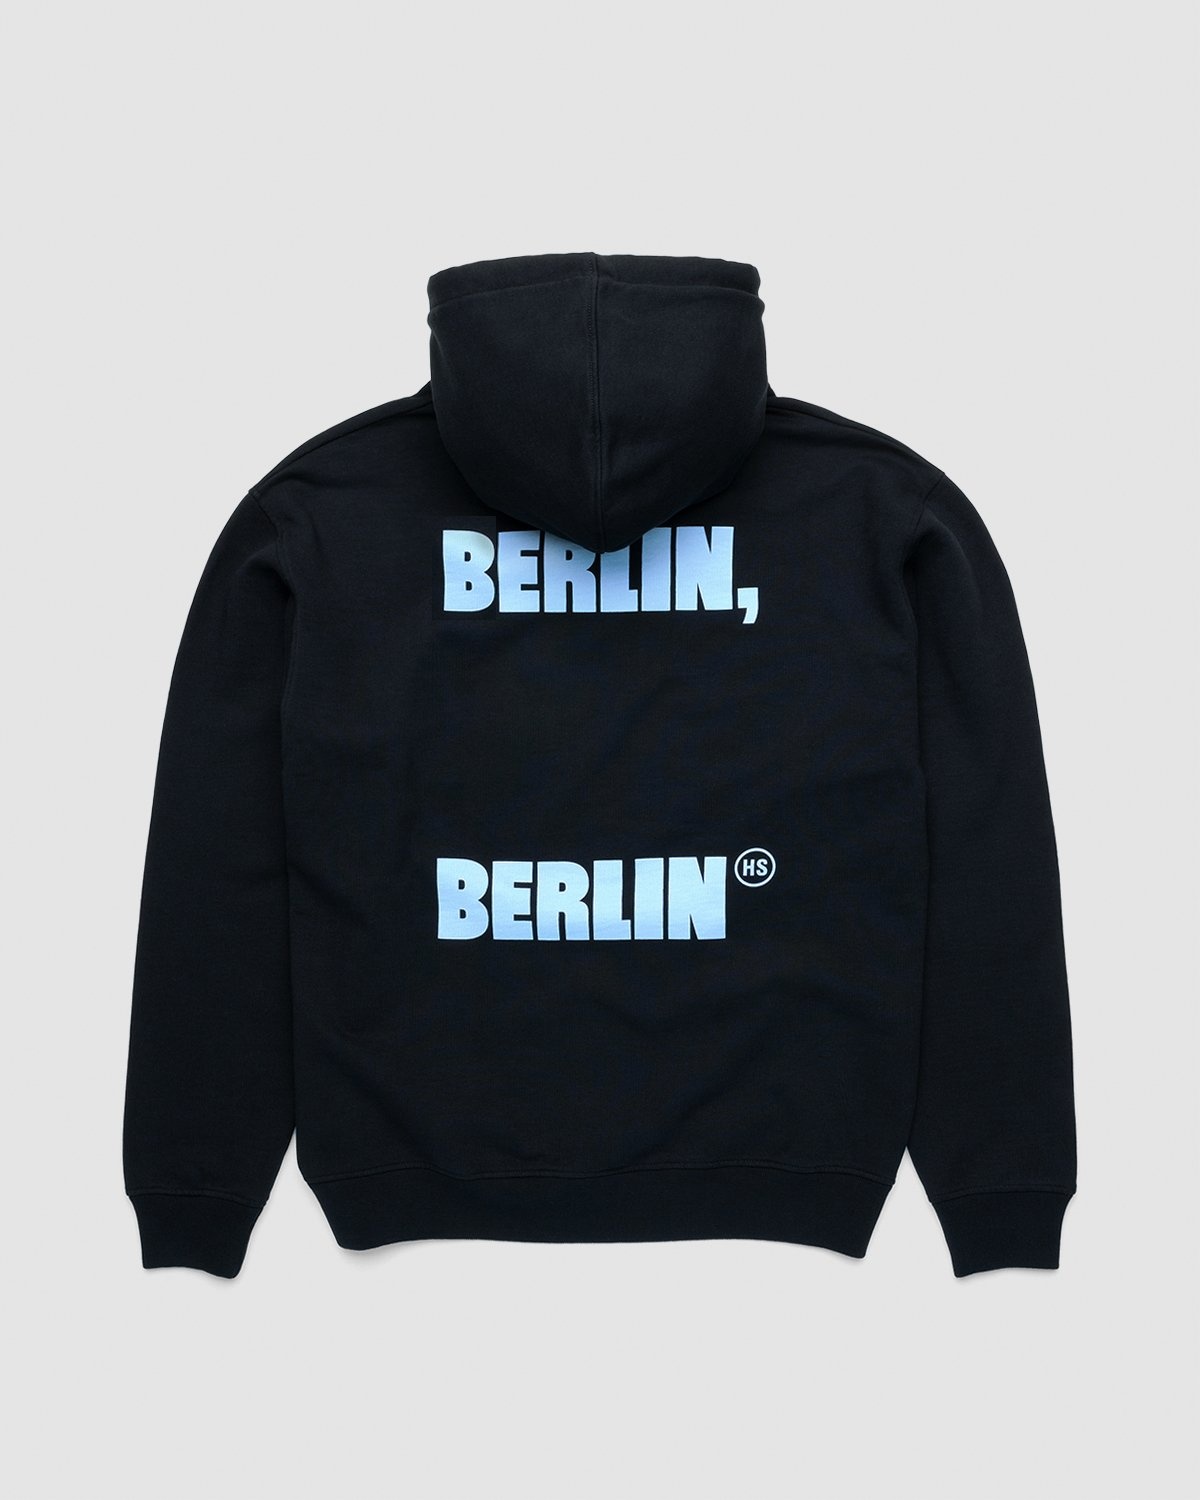 Highsnobiety – Berlin Berlin 2 Hoodie Black - Sweats - Black - Image 1